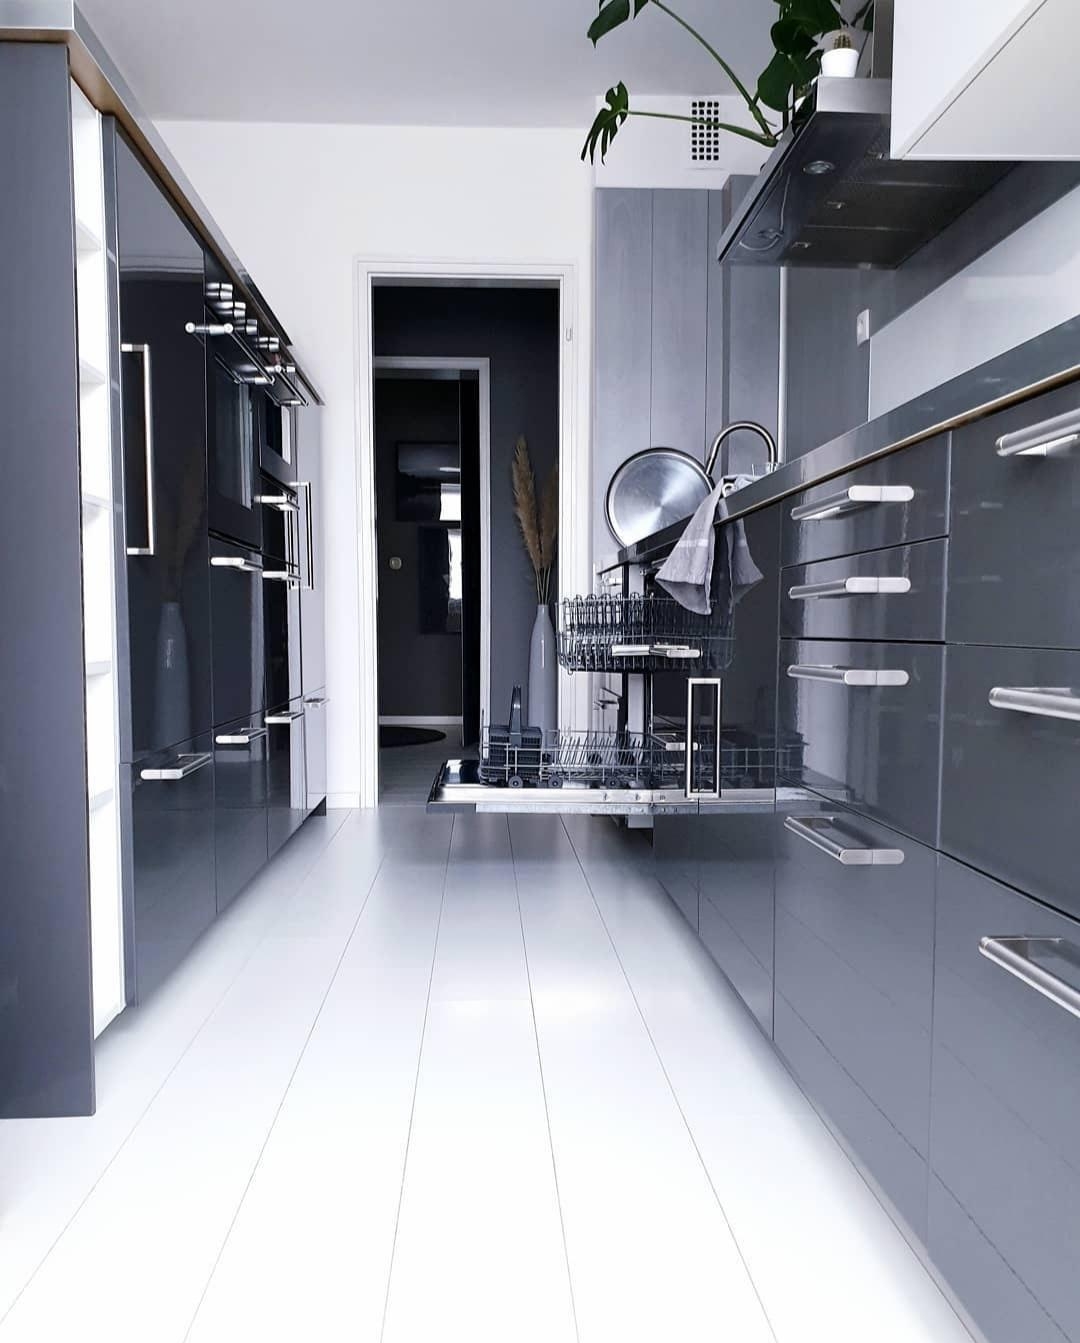 #monochrome #kitchen #grau #hochglanz #modern #clean #minimalism #interior
